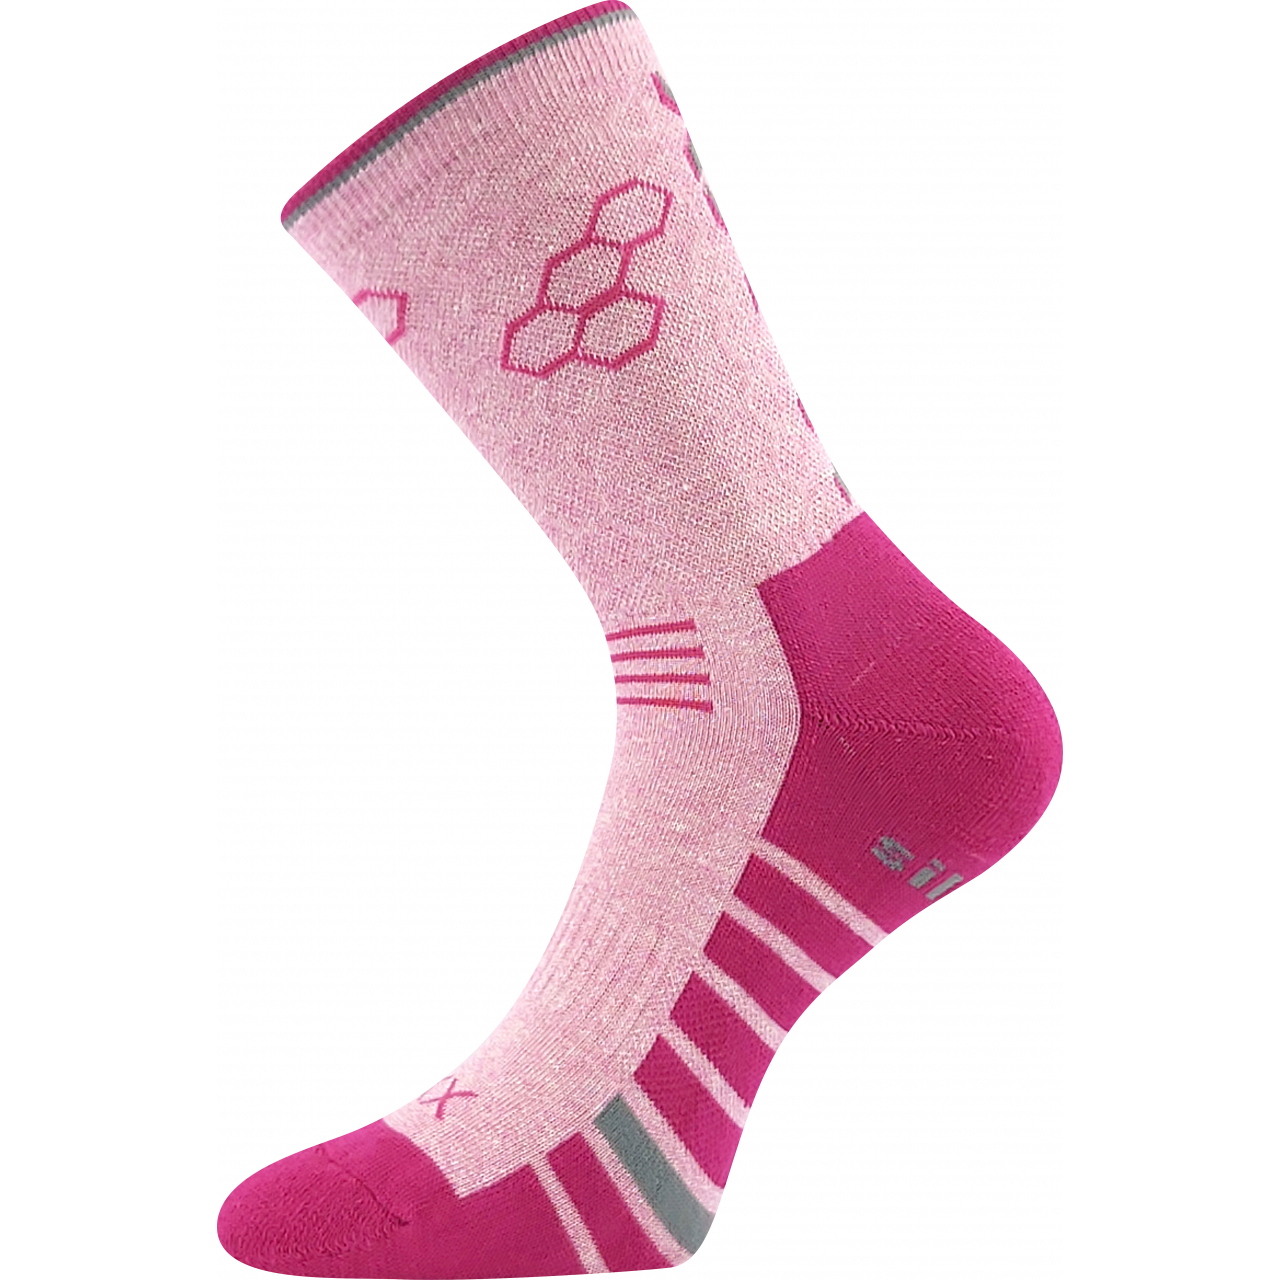 Ponožky sportovní unisex Voxx Virgo - světle růžové, 39-42